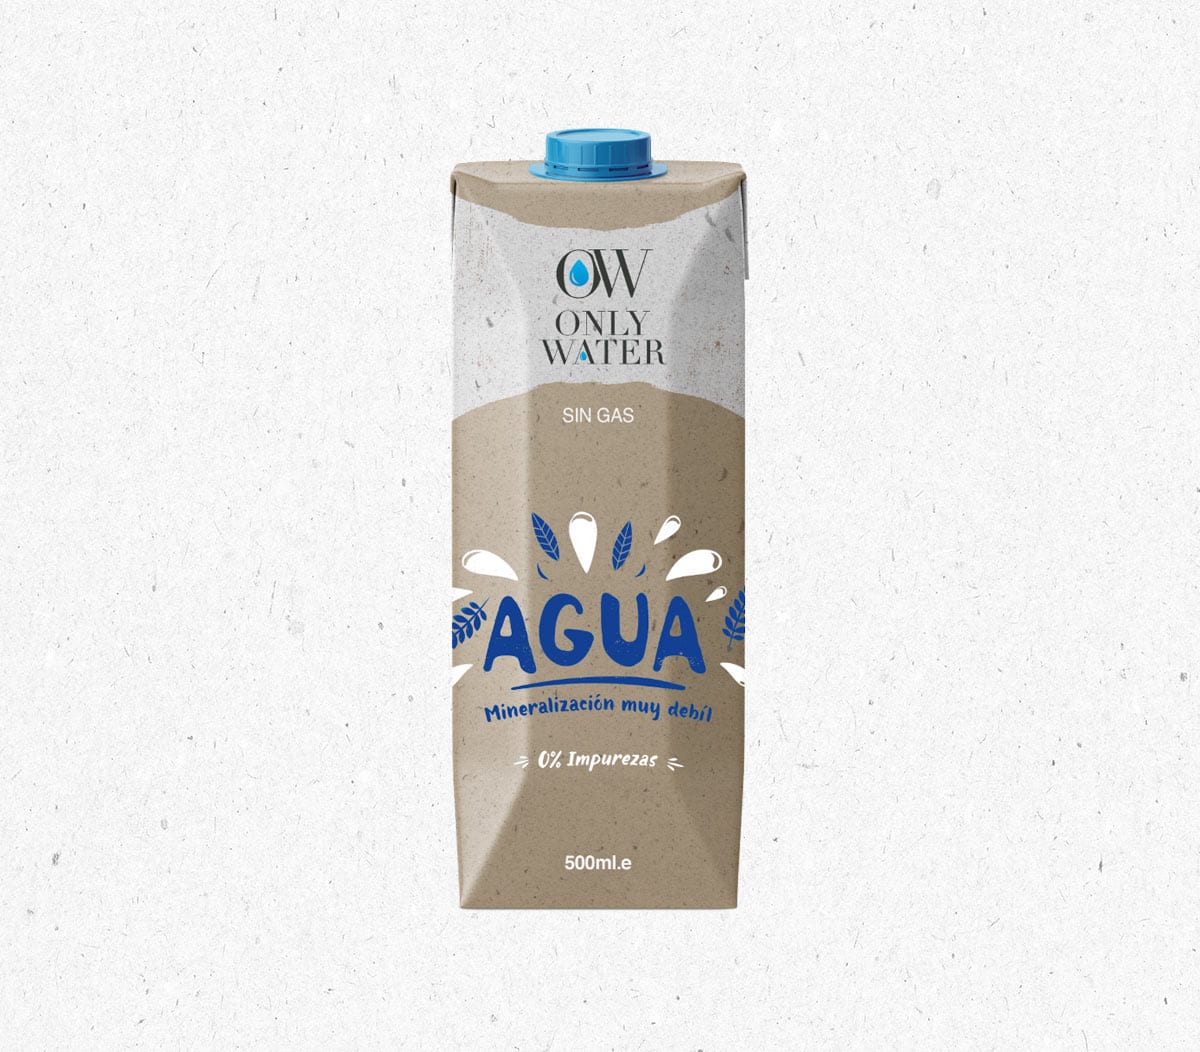 diseño de packaging para envases de agua en cartón sostenible